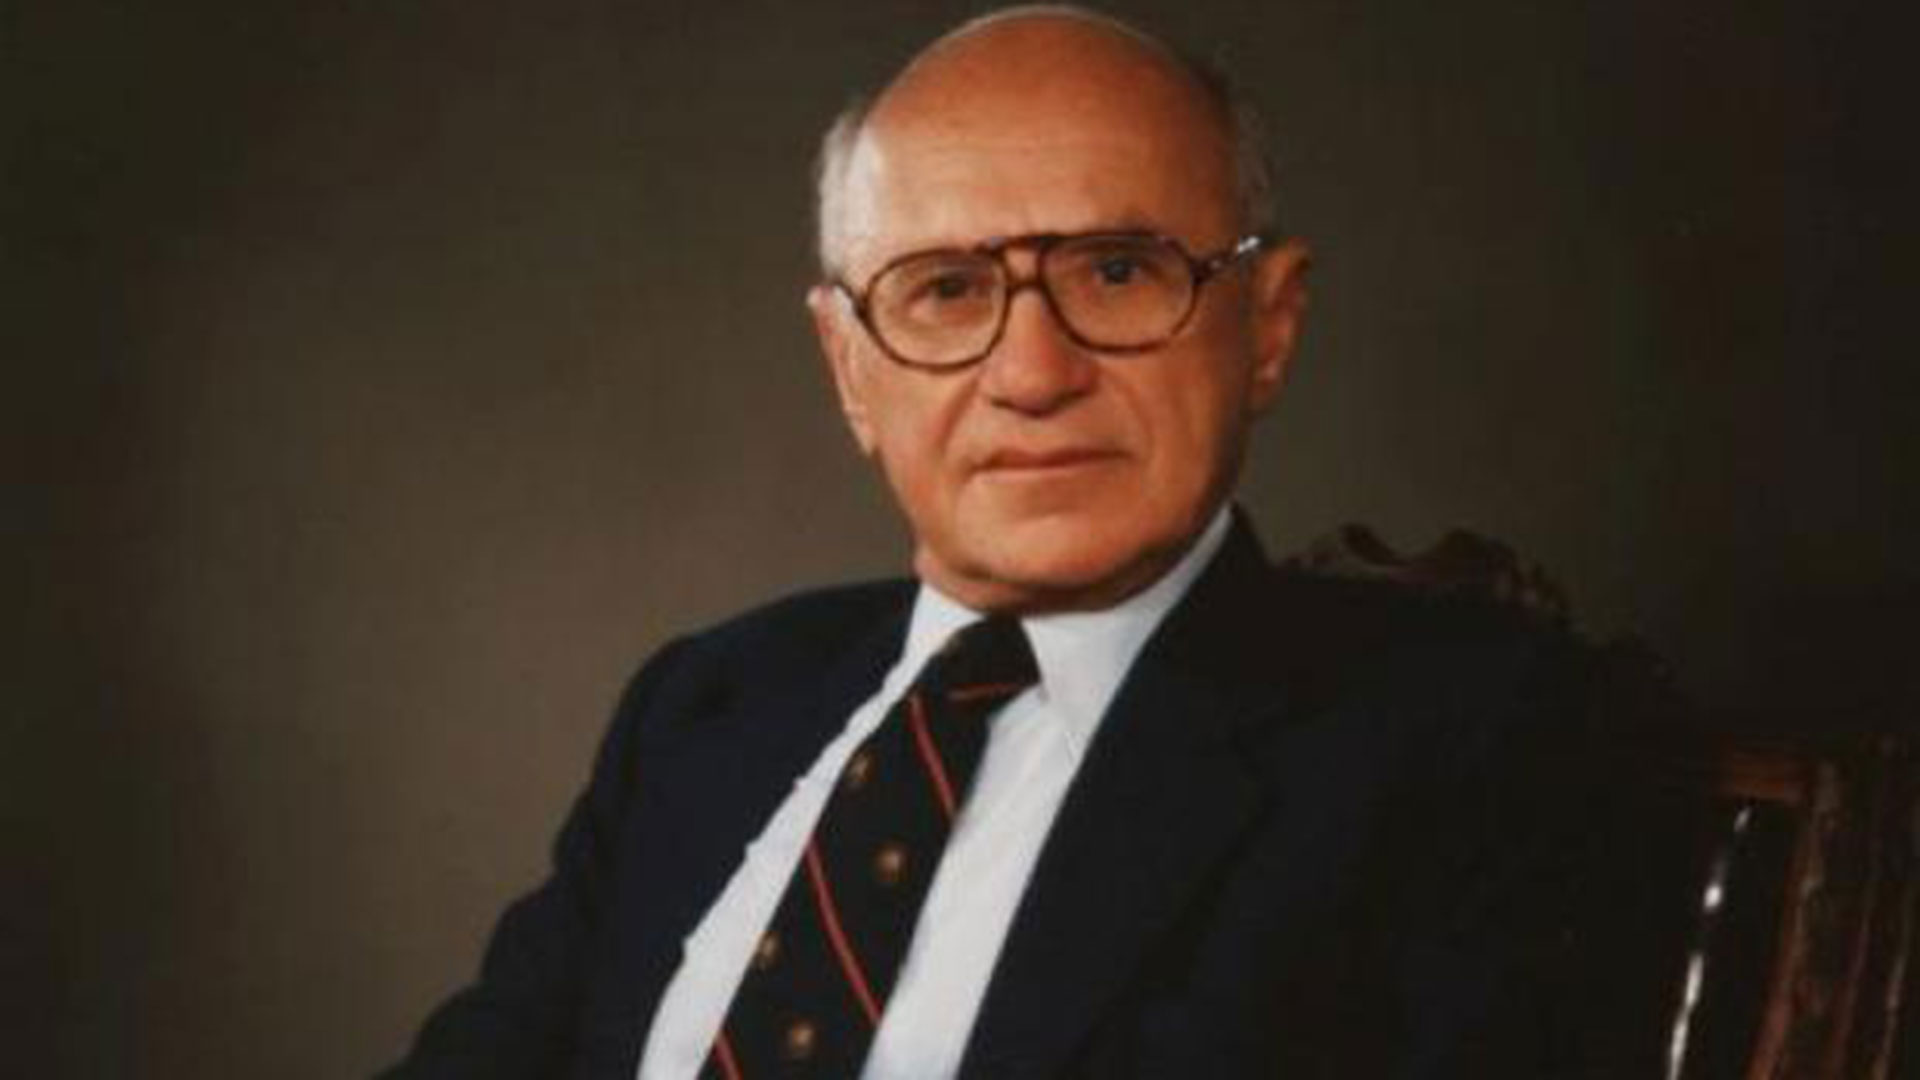 Milton Friedman, en su monumental Historia Monetaria de los EEUU y clases en la Universidad de Chicago, sostenía que "el actuar de la Reserva Federal (Fed), el banco central de los EEUU, agravó la Gran Depresión de 1930"